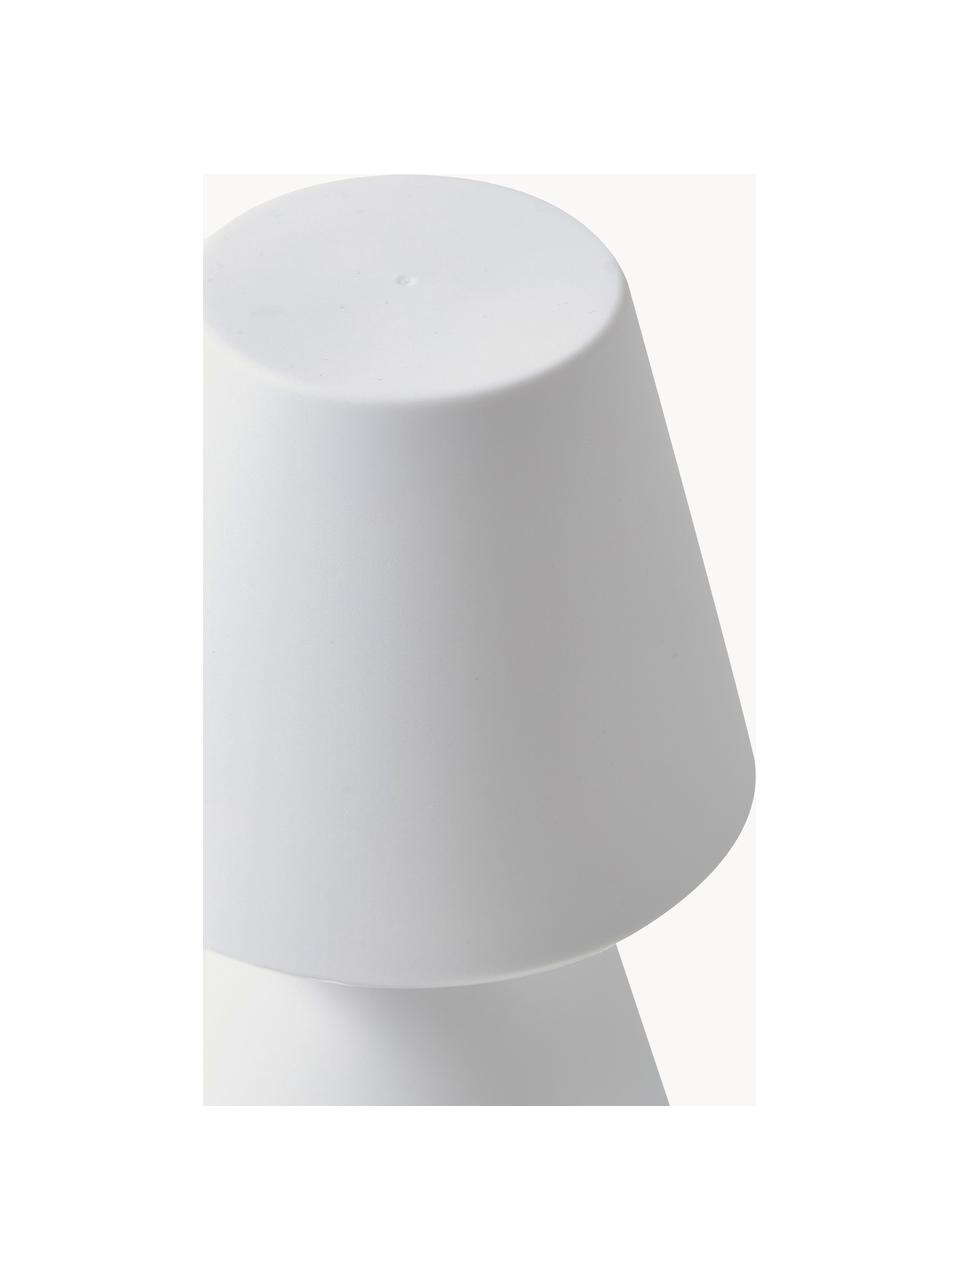 Mobile dimmbare Außentischlampe Lola mit Farbwechsel, Weiß, Ø 11 x H 20 cm